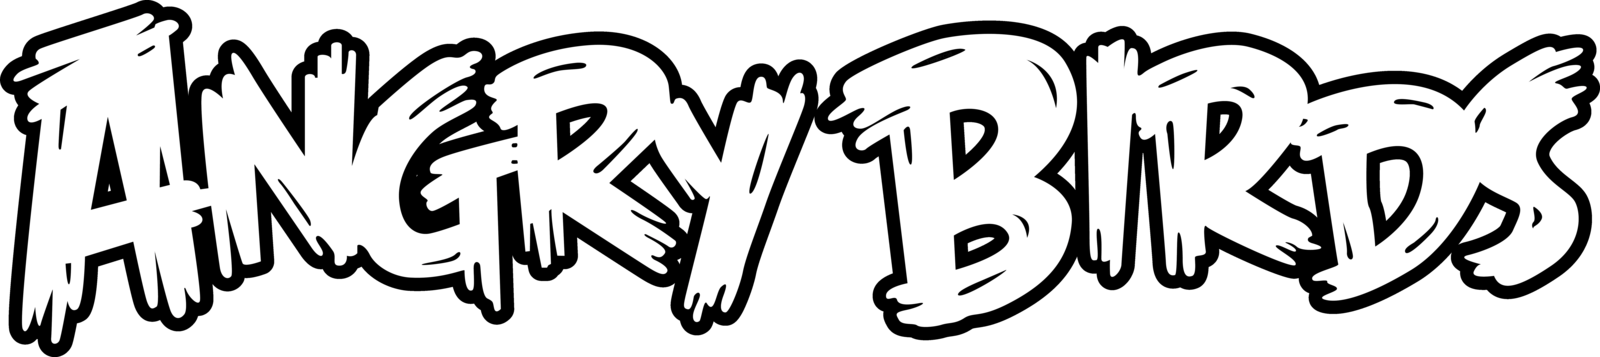 Angry Birds logo PNG высококачественный образ